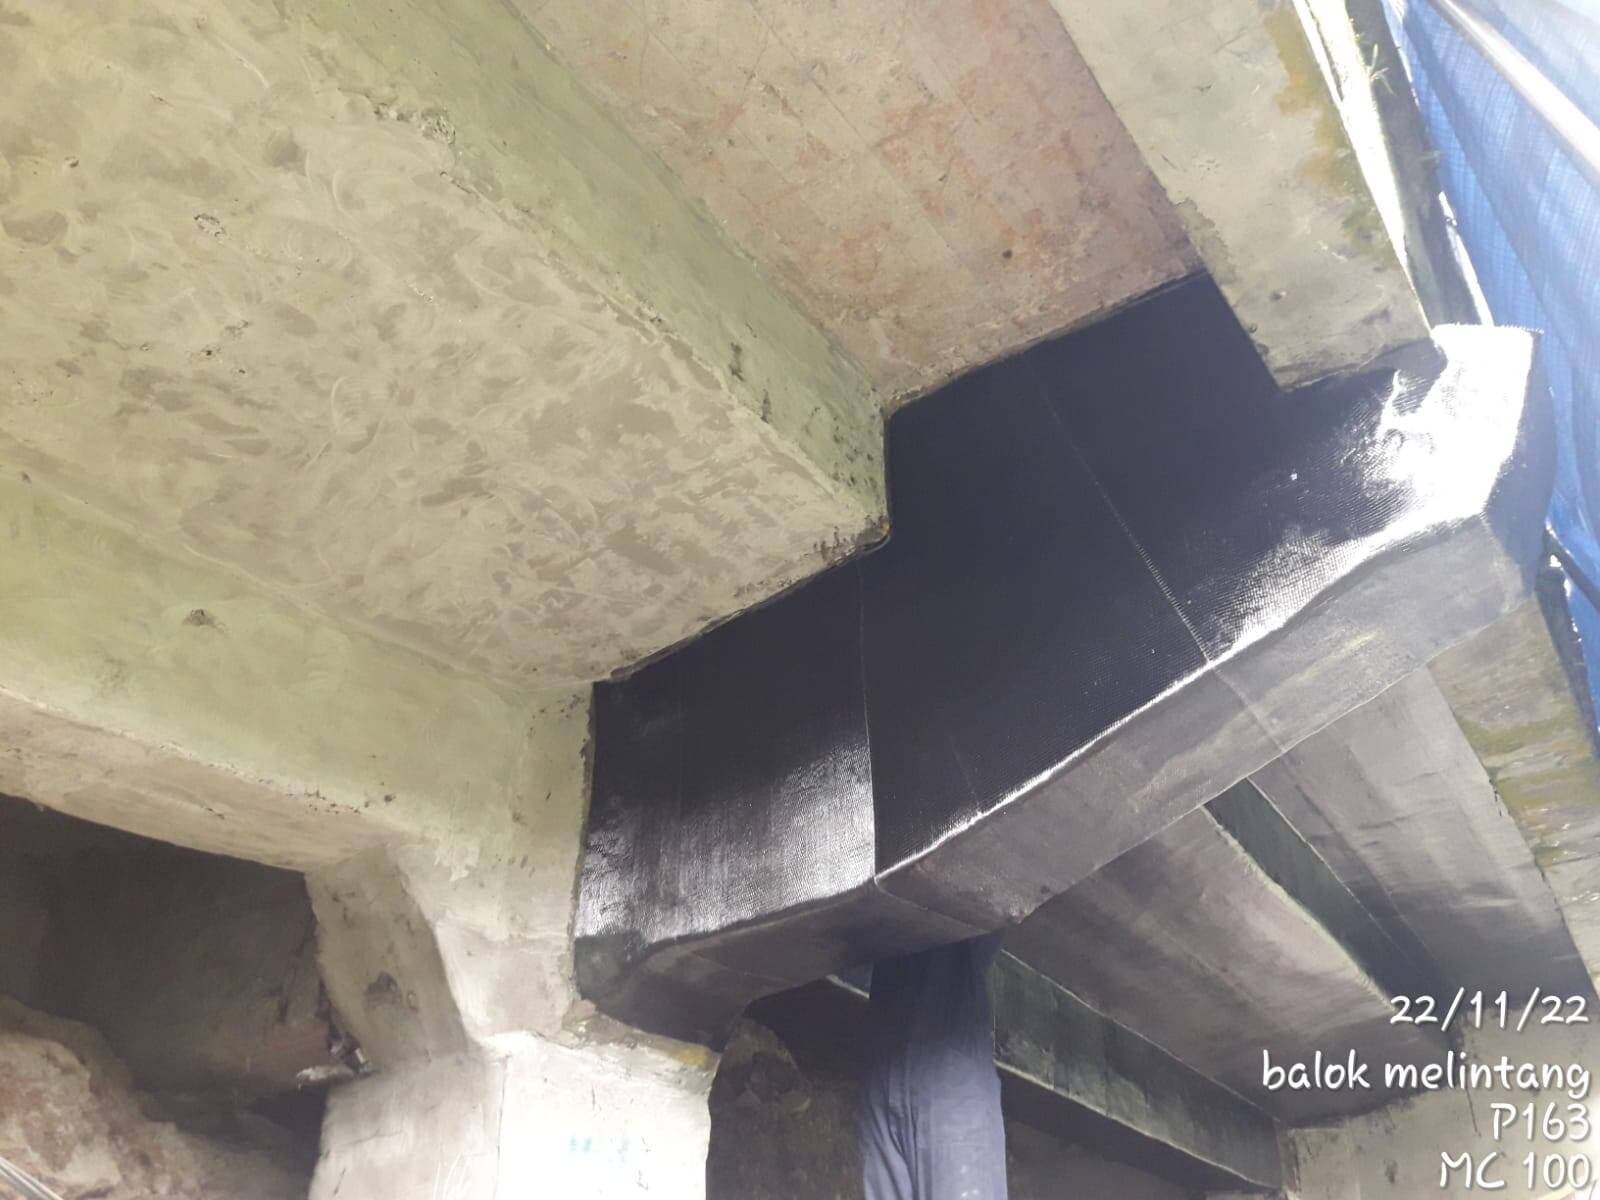 carbon fiber repair crack bridge